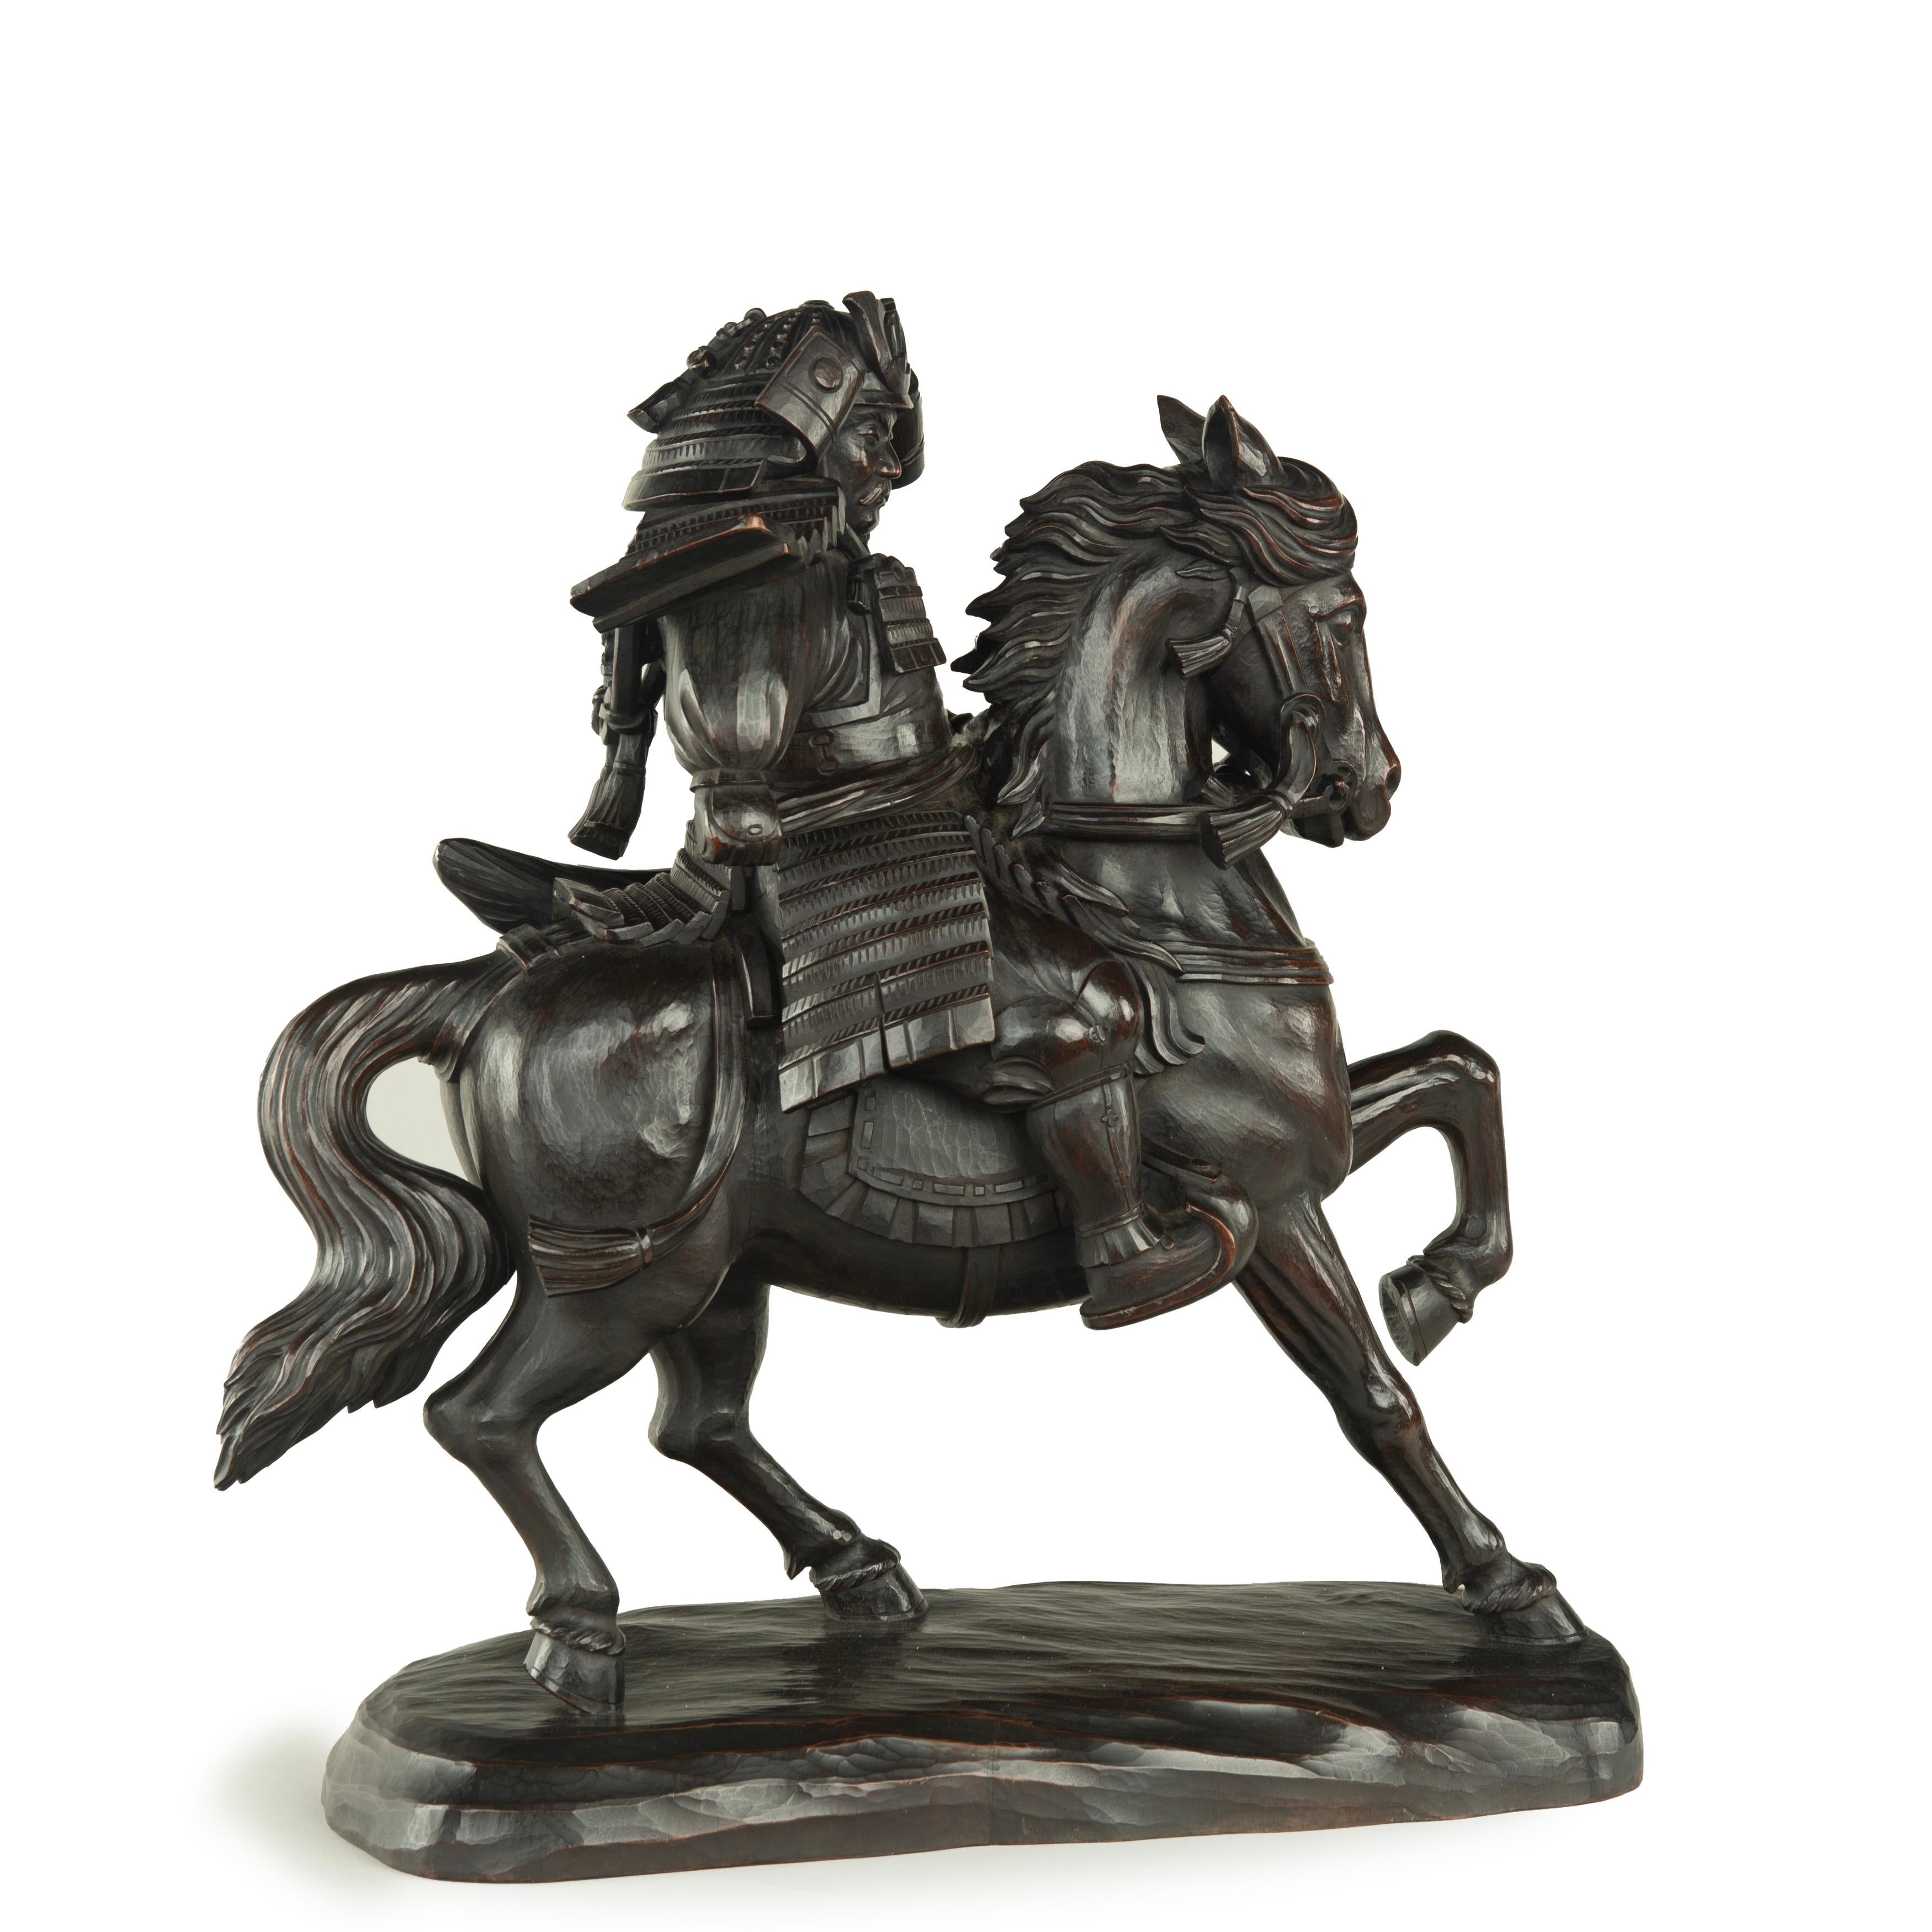 
Puissante sculpture équestre japonaise en bois d'un samouraï par Yoshida Issen/Isshun, représenté en armure complète sur un cheval de guerre musclé et cabré, signée 一雋刀